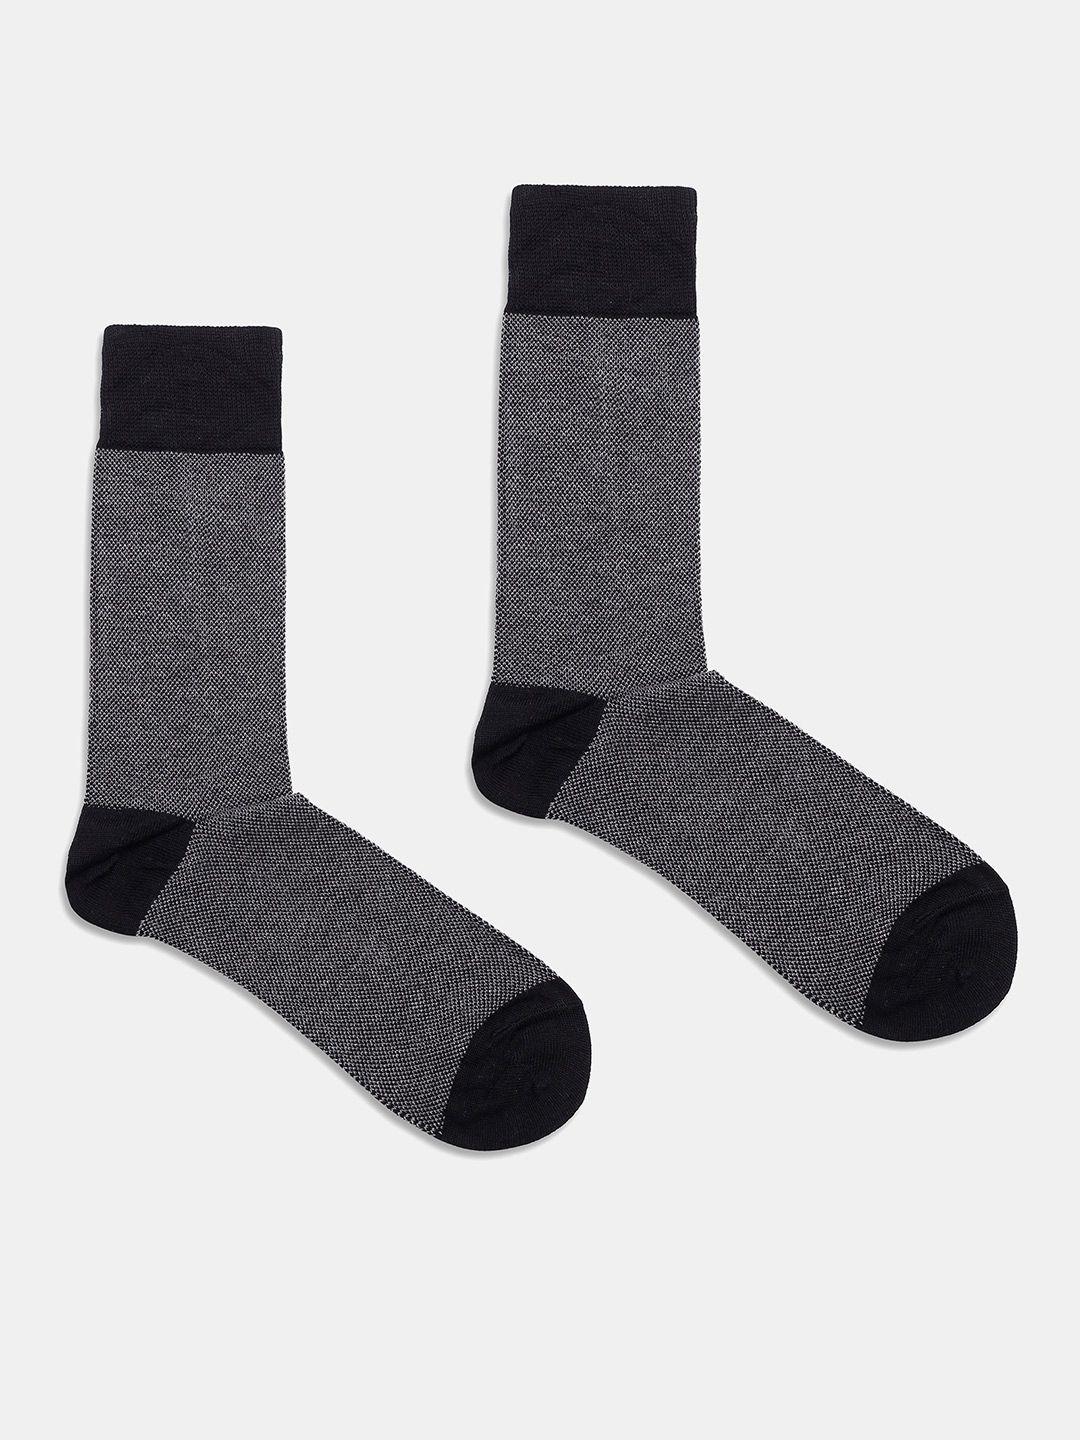 blackberrys men patterned calf length socks